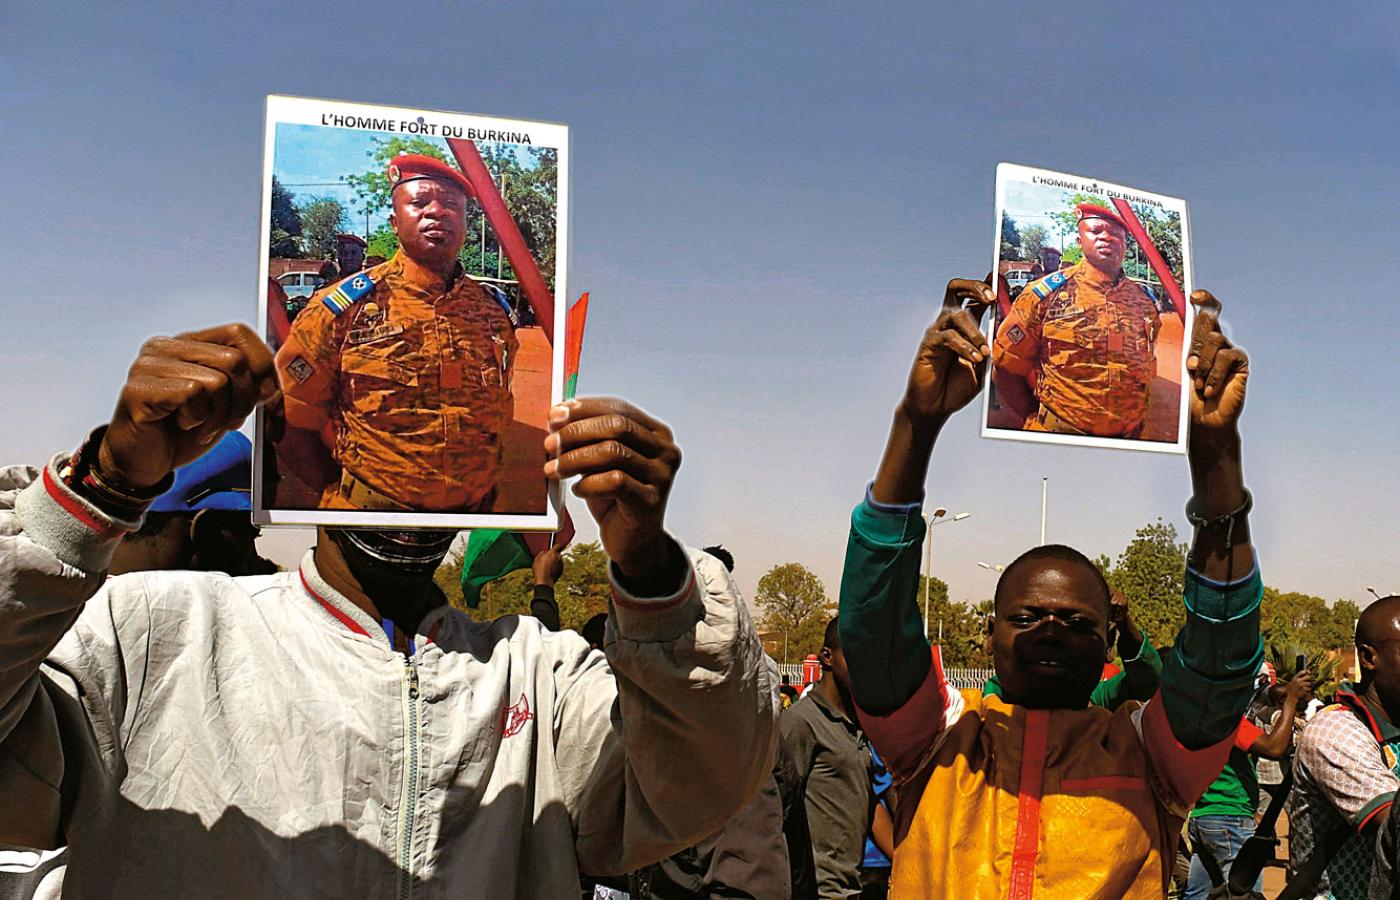 ONZ szacuje, że w wyniku trwającego od 2015 r. powstania dżihadystów domy opuściło 1,5 mln z 22 mln mieszkańców Burkina Faso.